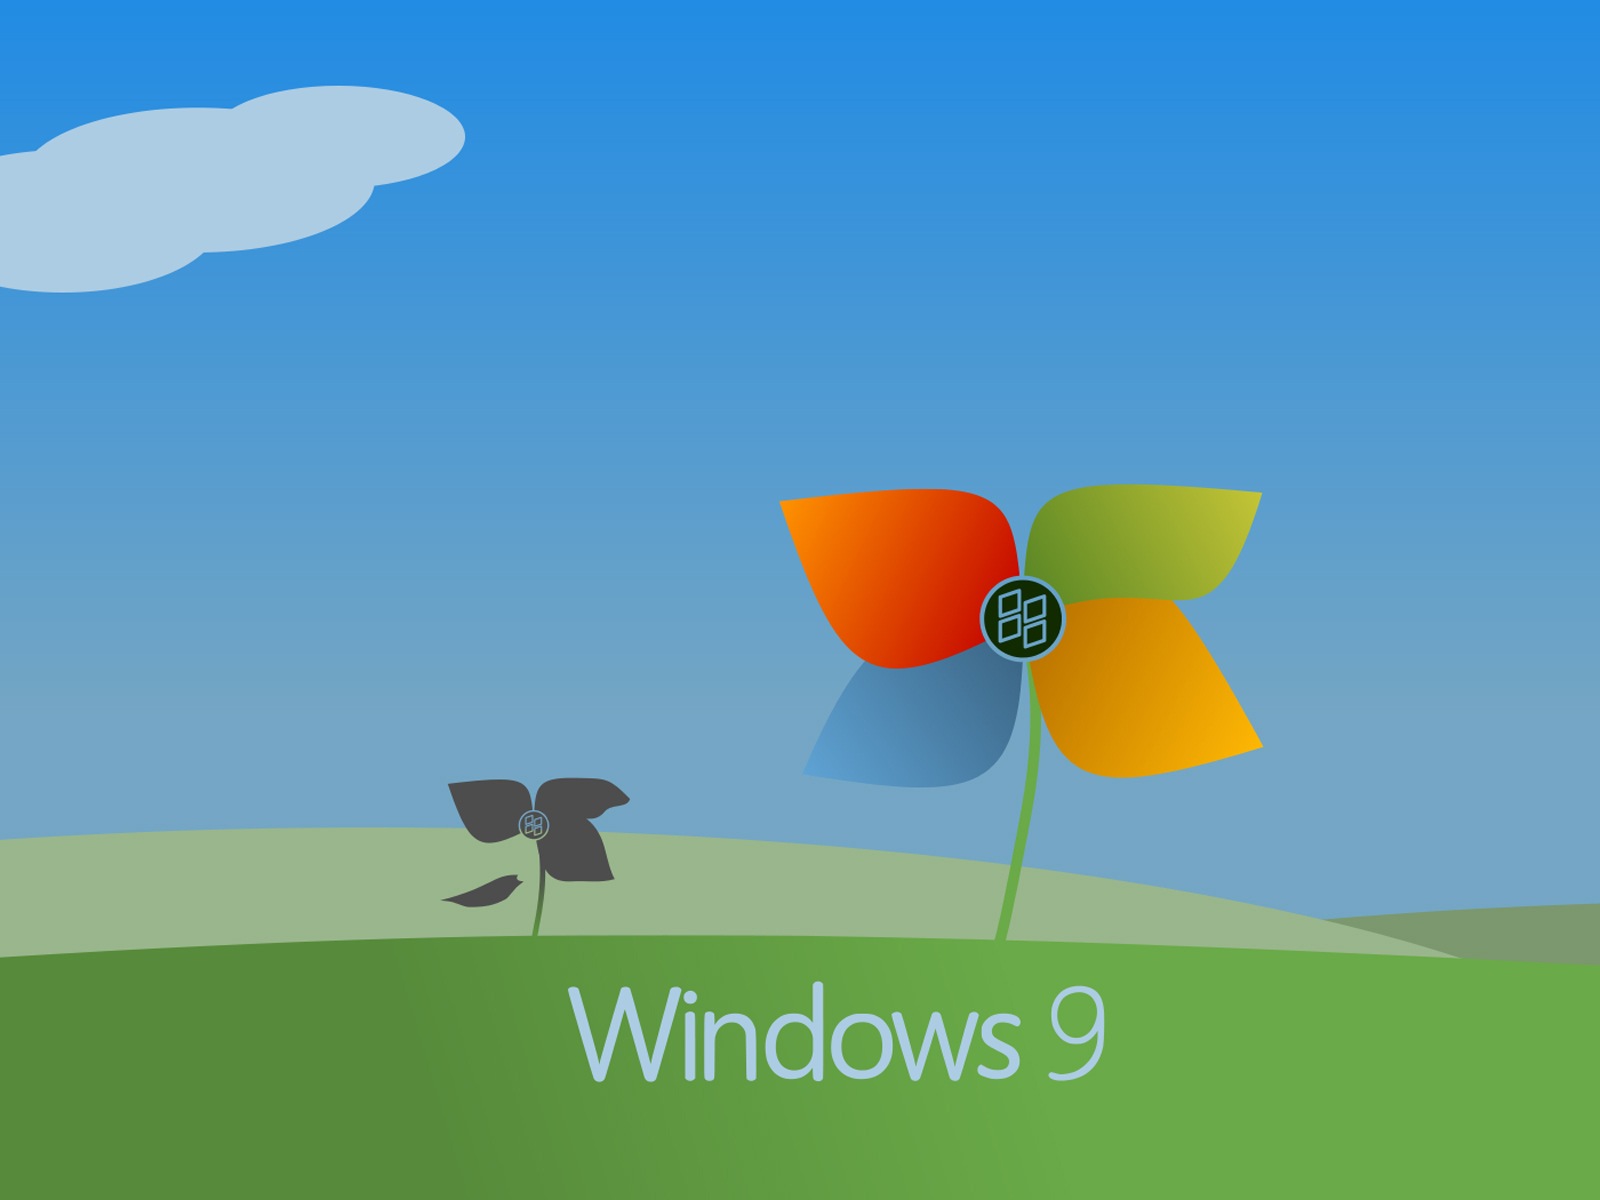 微软 Windows 9 系统主题 高清壁纸5 - 1600x1200